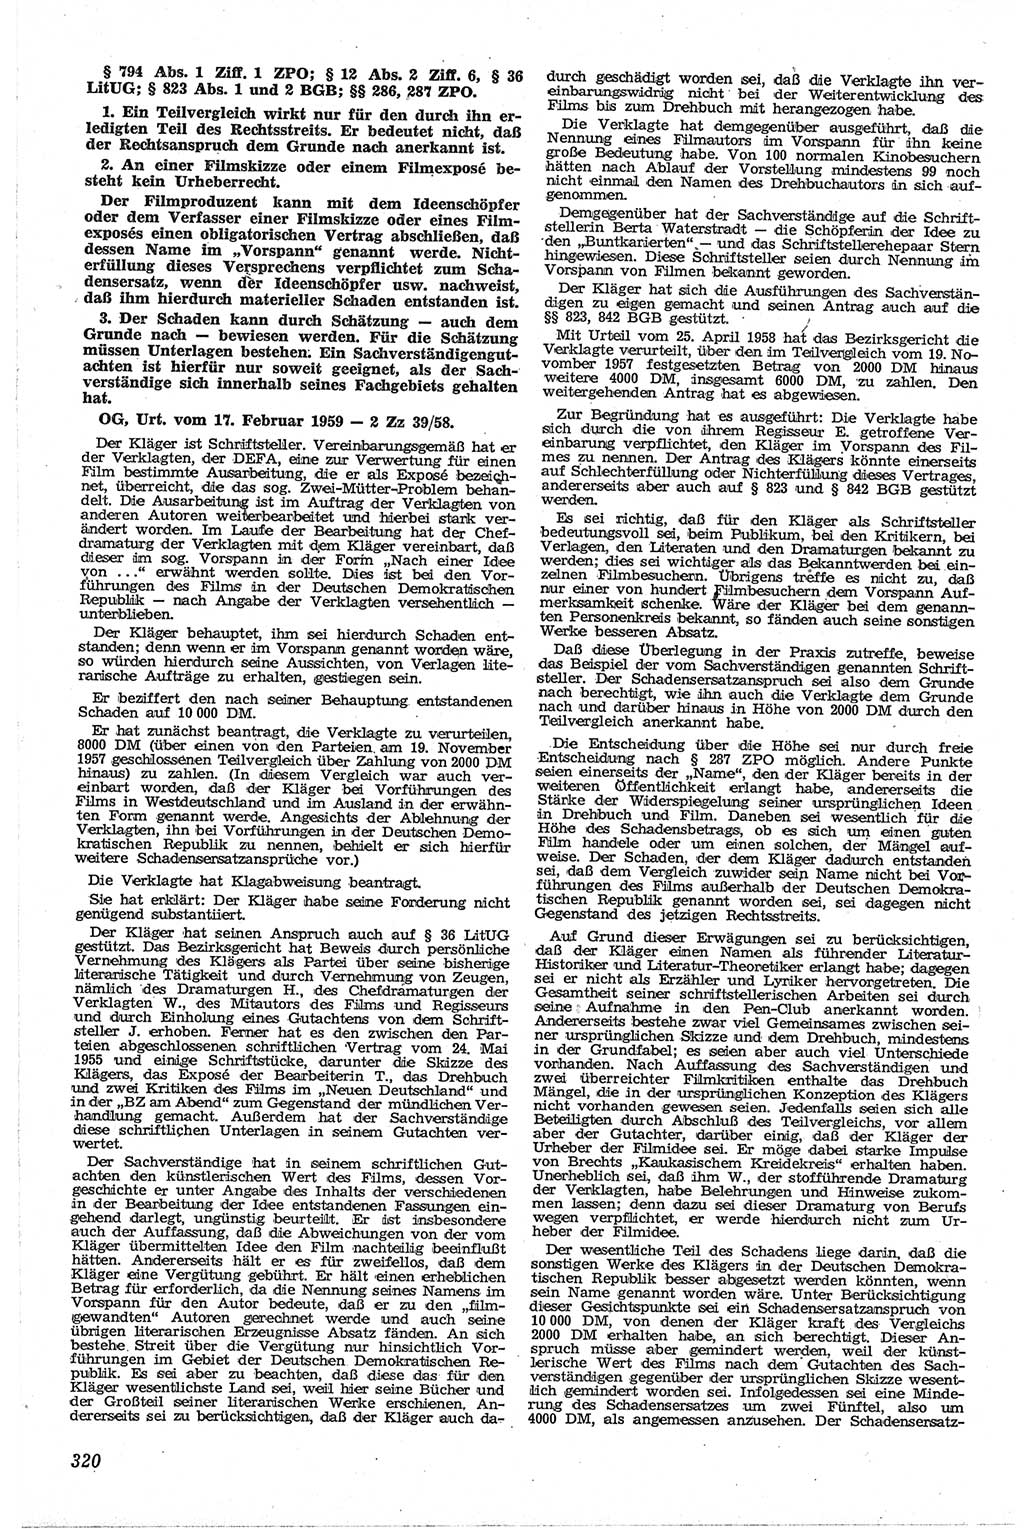 Neue Justiz (NJ), Zeitschrift für Recht und Rechtswissenschaft [Deutsche Demokratische Republik (DDR)], 13. Jahrgang 1959, Seite 320 (NJ DDR 1959, S. 320)